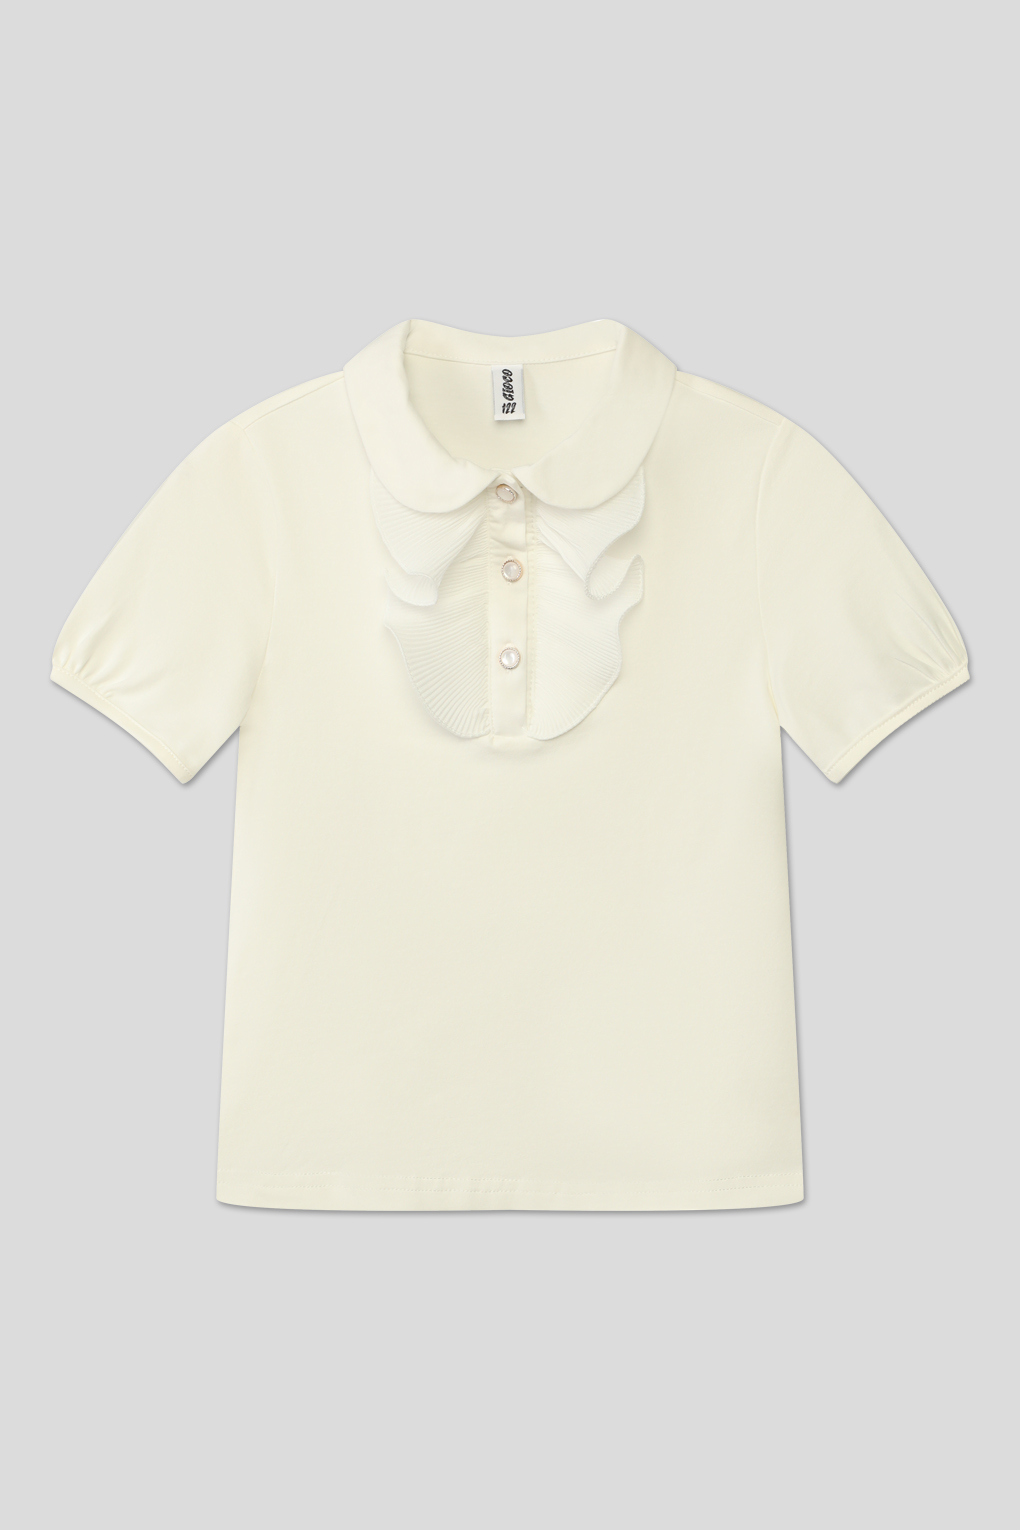 блуза трикотажная GIOCO G23063485-025 молочный для девочек, цвет Молочный р.140